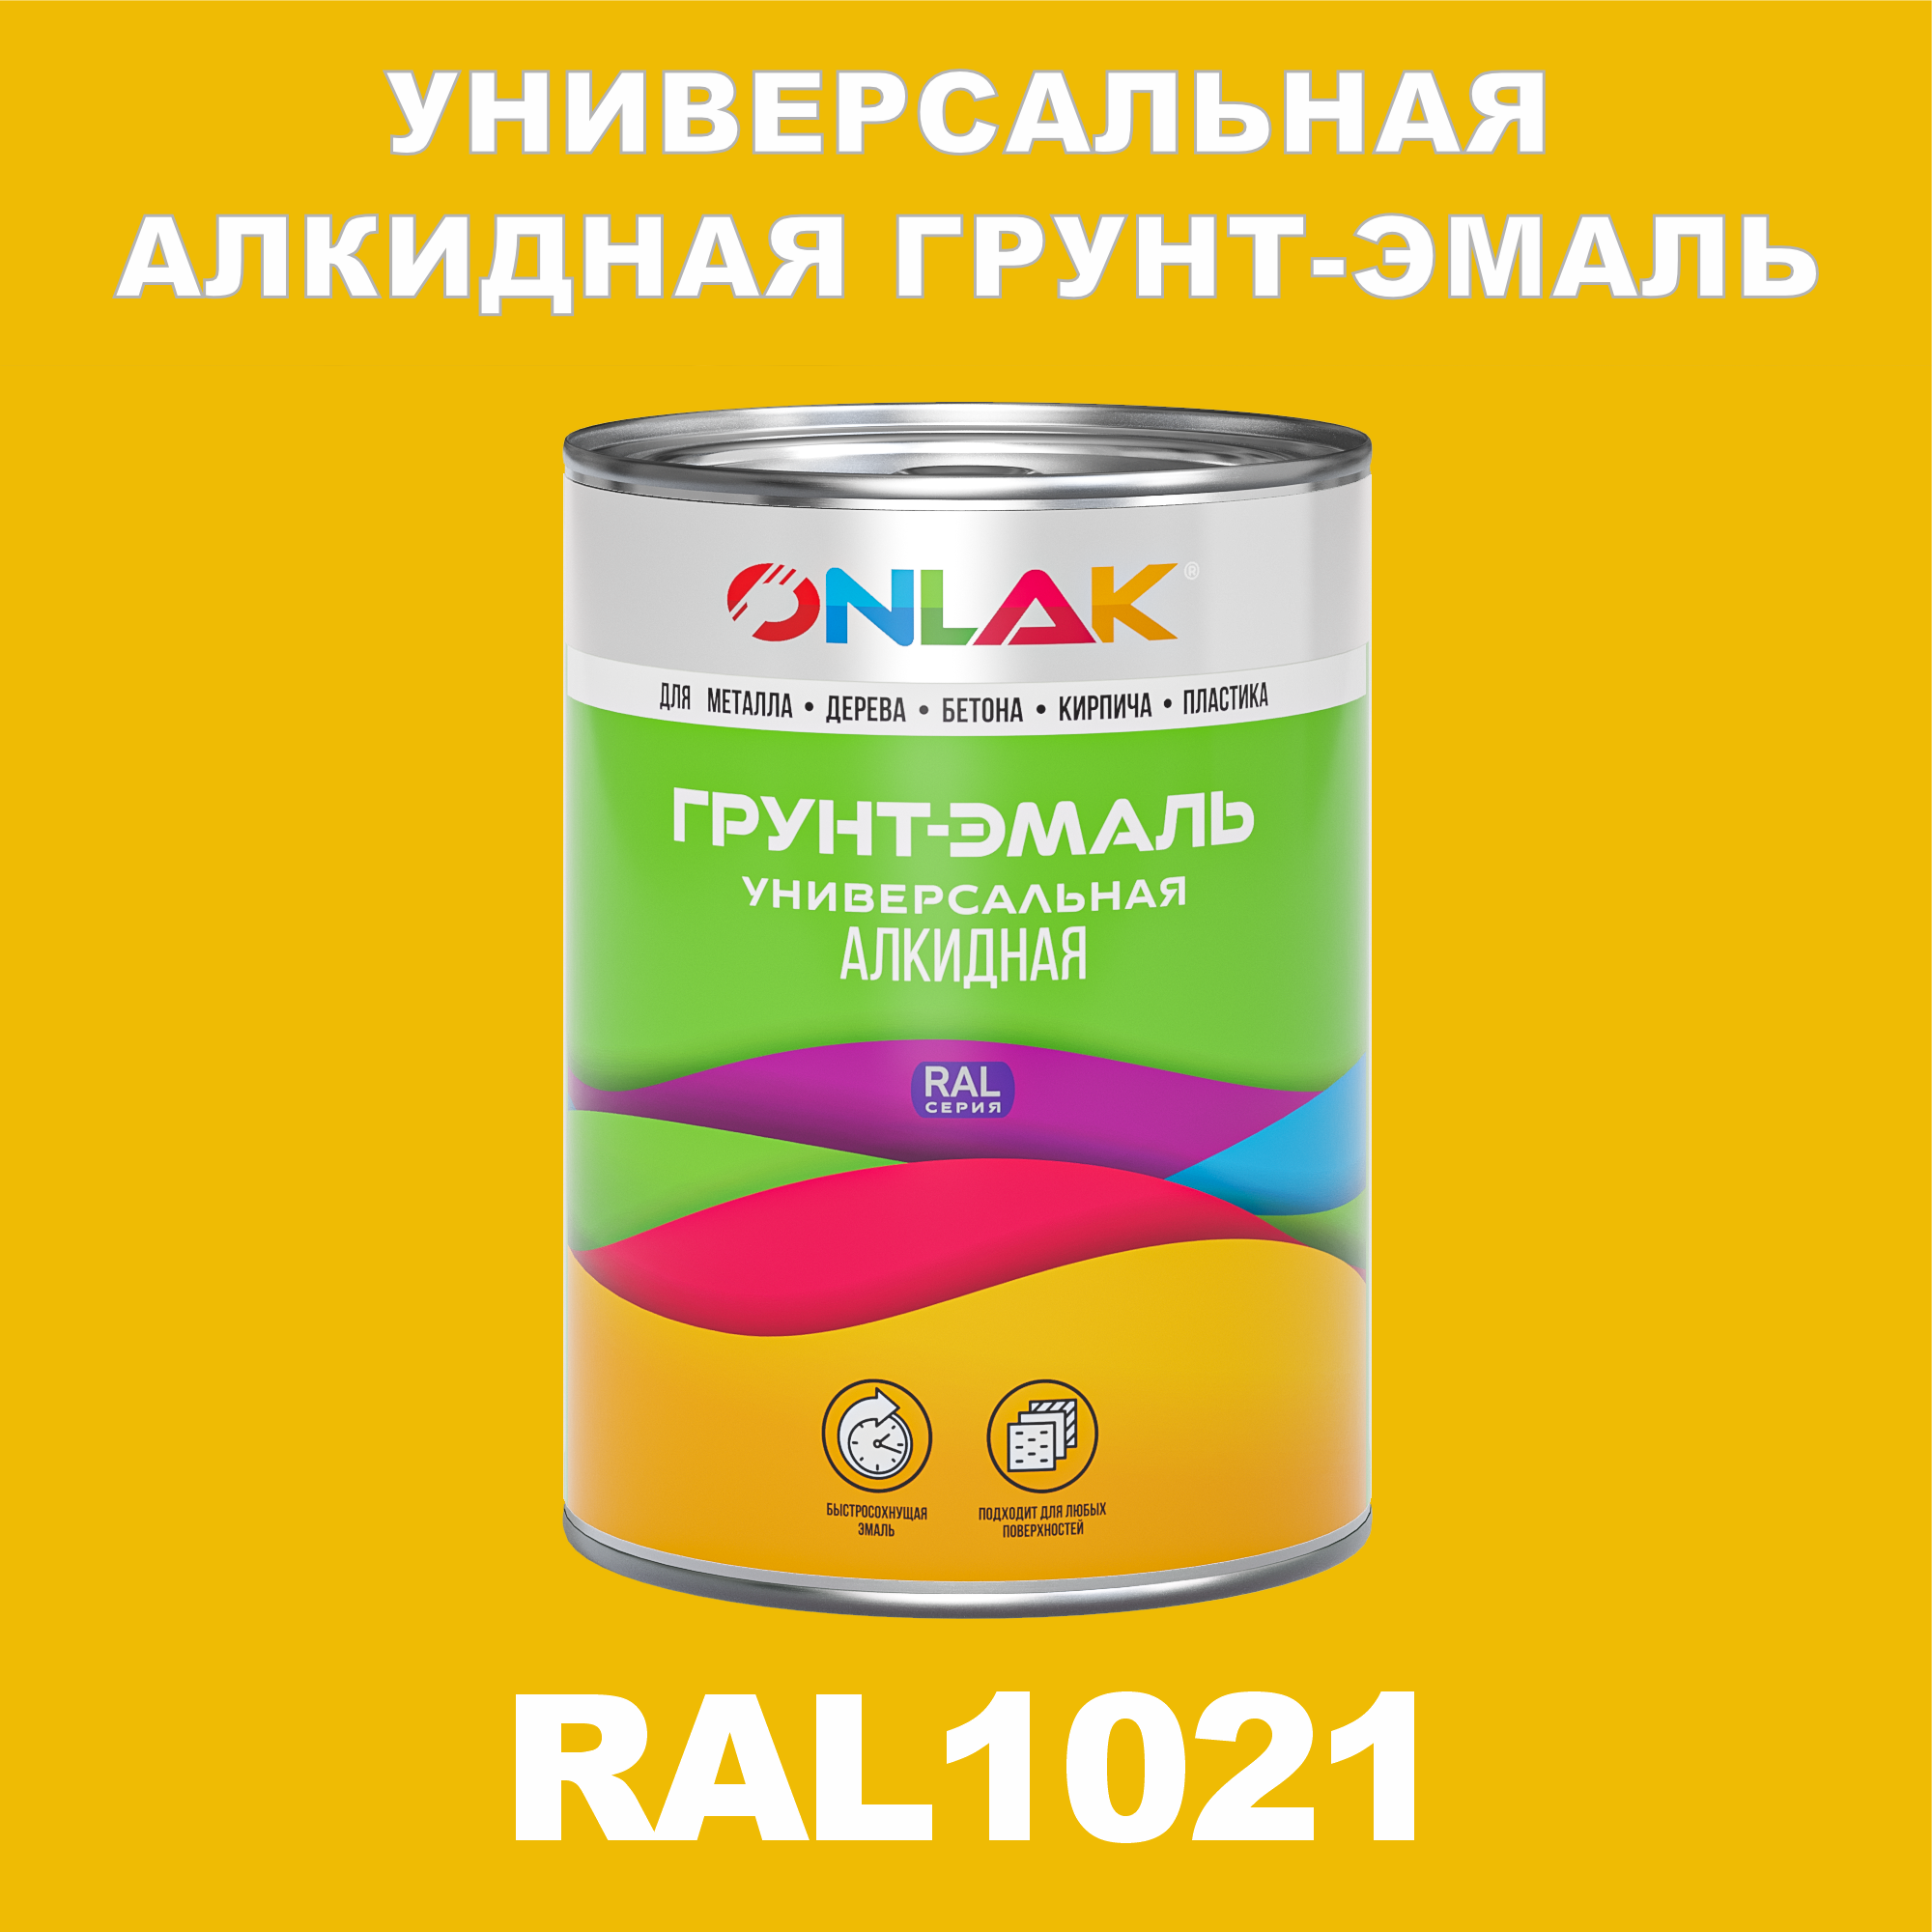 Грунт-эмаль ONLAK 1К RAL1021 антикоррозионная алкидная по металлу по ржавчине 1 кг грунт эмаль neomid по ржавчине быстросохнущая алкидная серая 0 9 кг